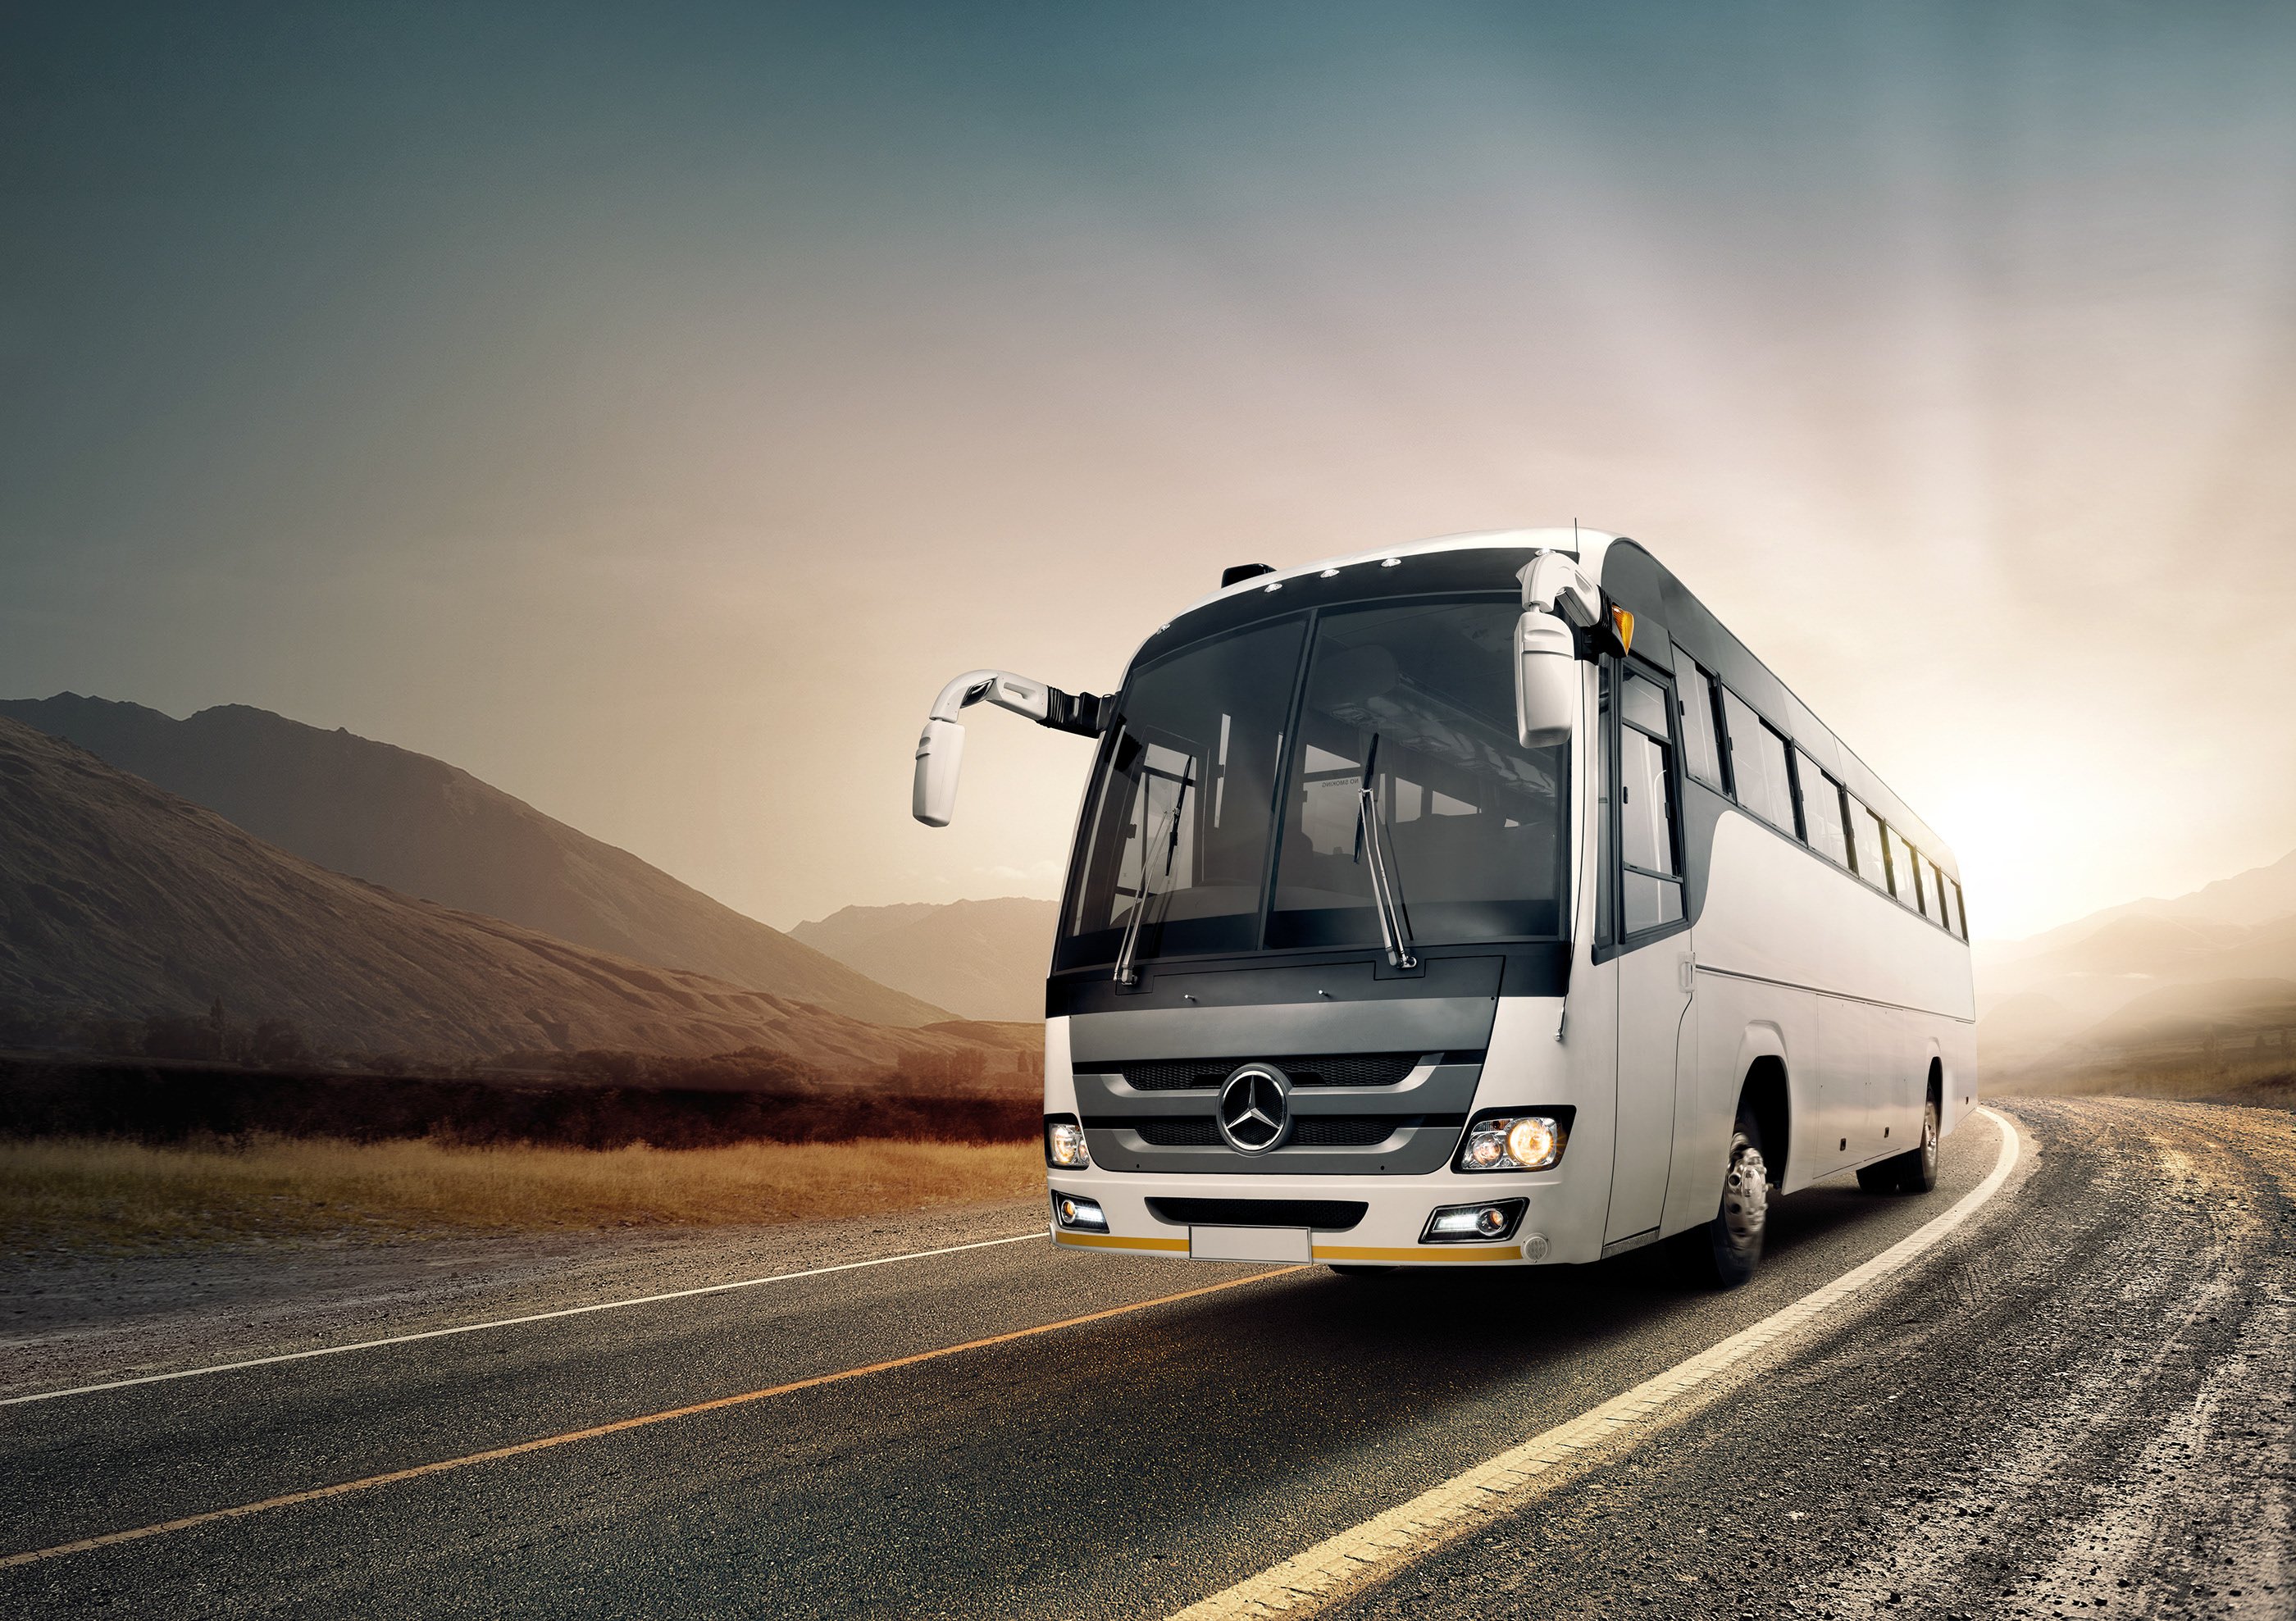 Регулярные пассажирские перевозки. Мерседес Бенц (Bus). Mercedes Benz автобус. Автобус Mercedes (Bus). Mercedes Benz 0408 Bus.